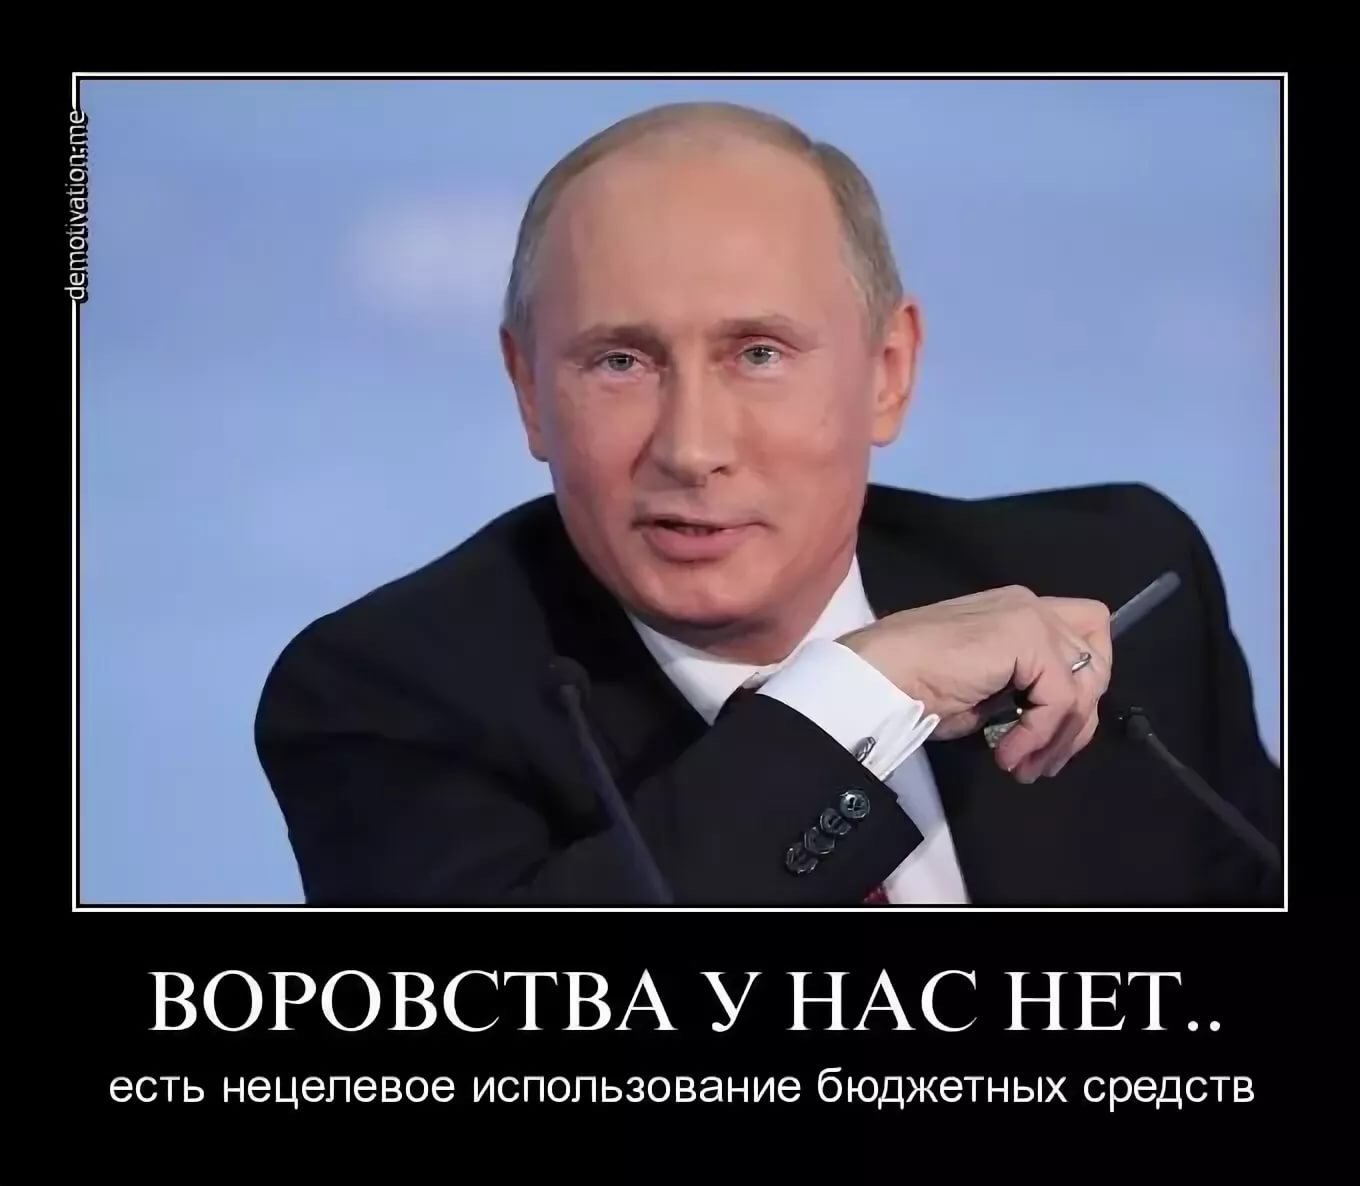 Почему в россии такие люди. В России воруют. Демотиваторы против Путина. Мемы про Путина.